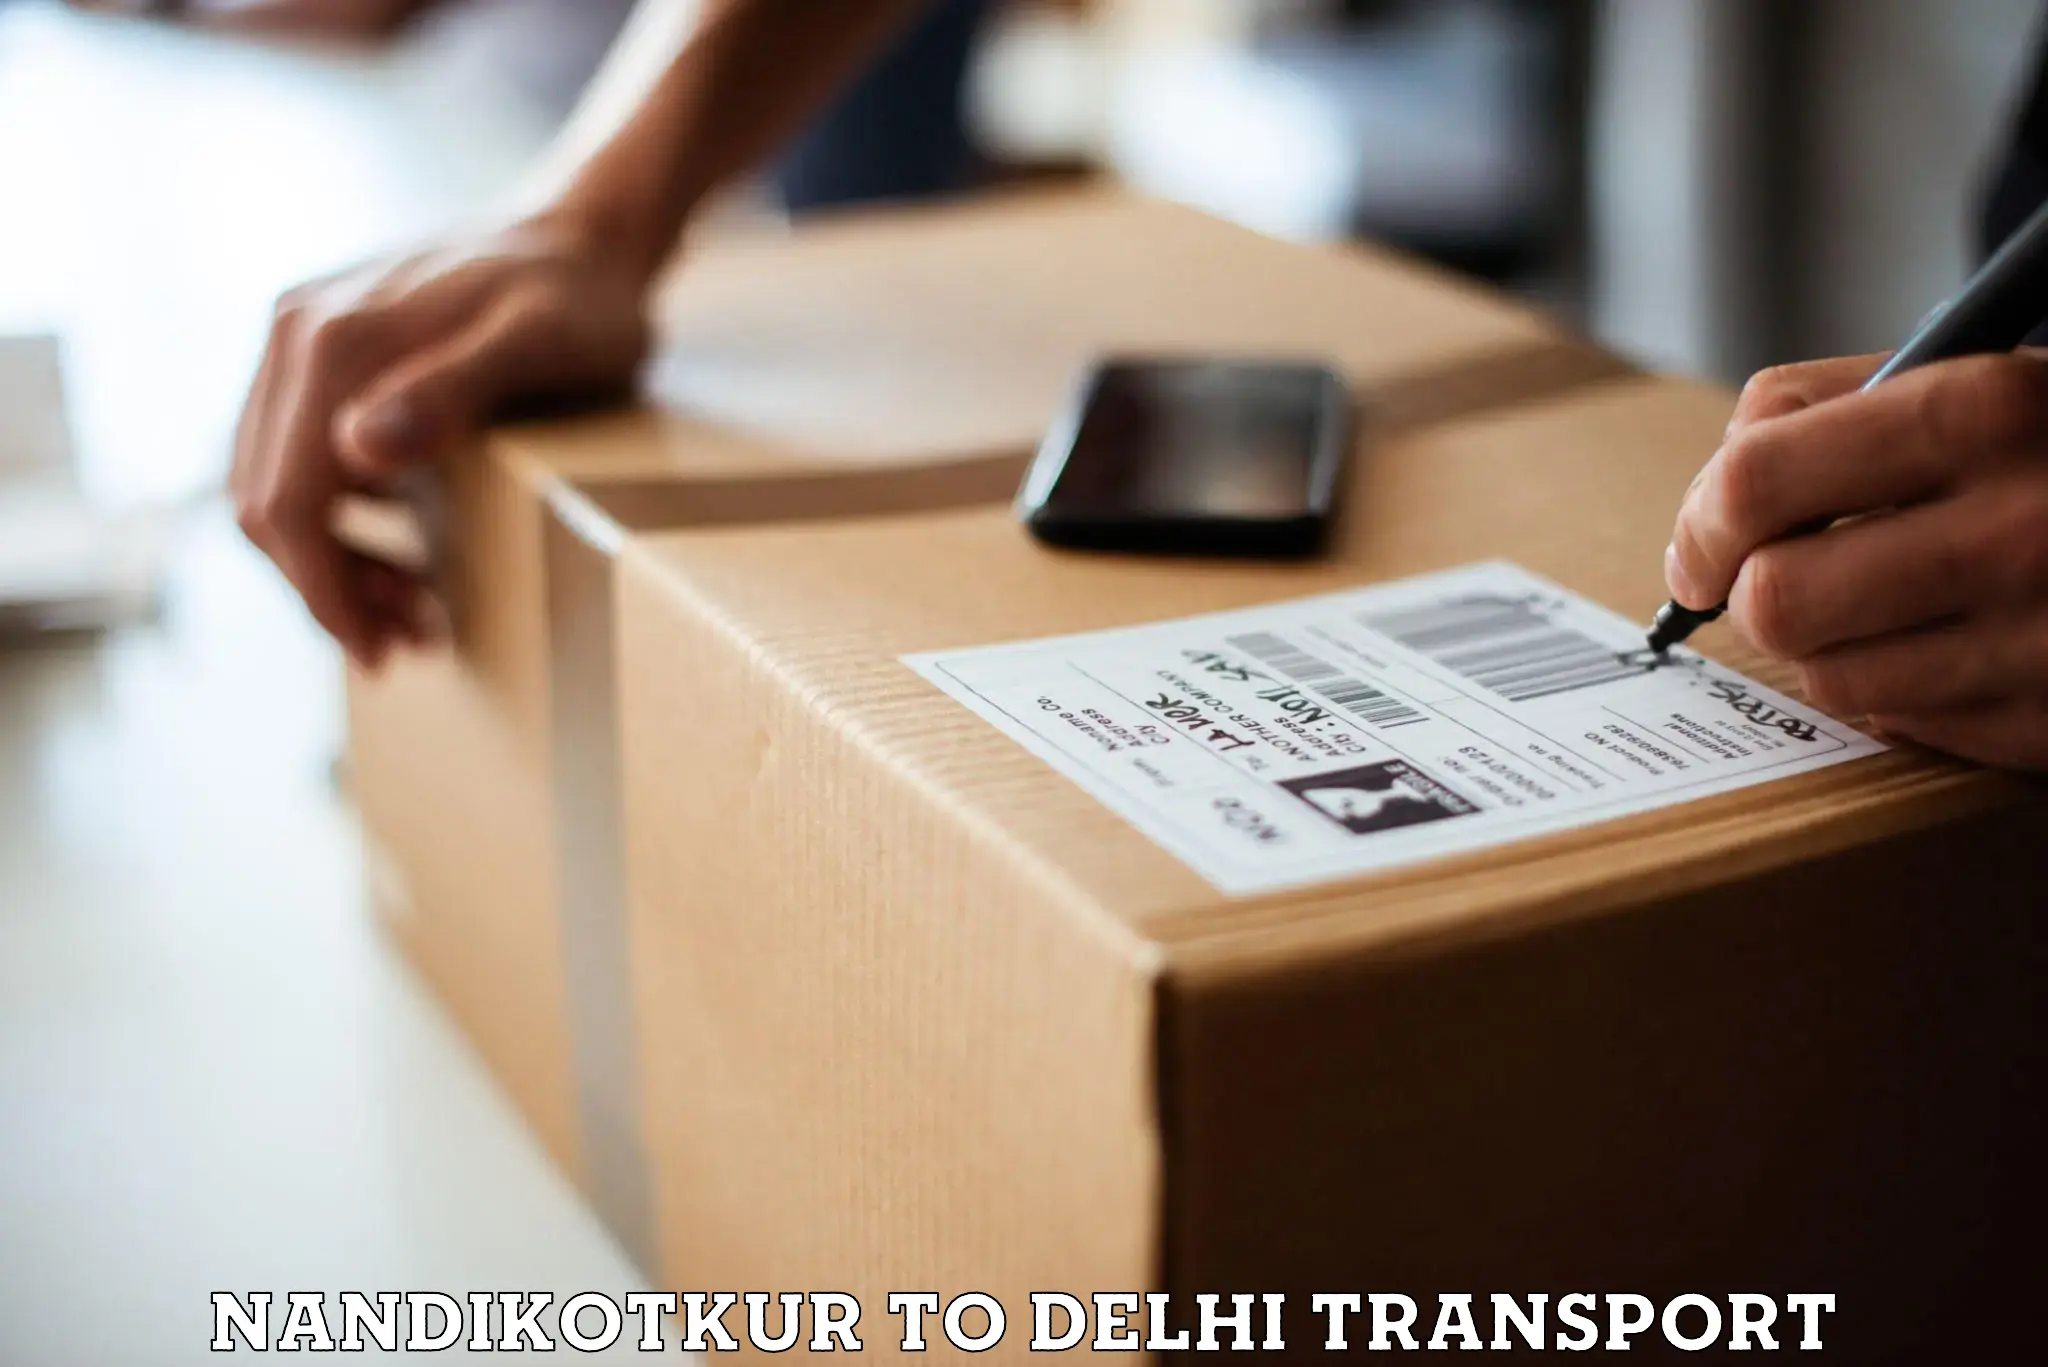 Domestic transport services Nandikotkur to East Delhi